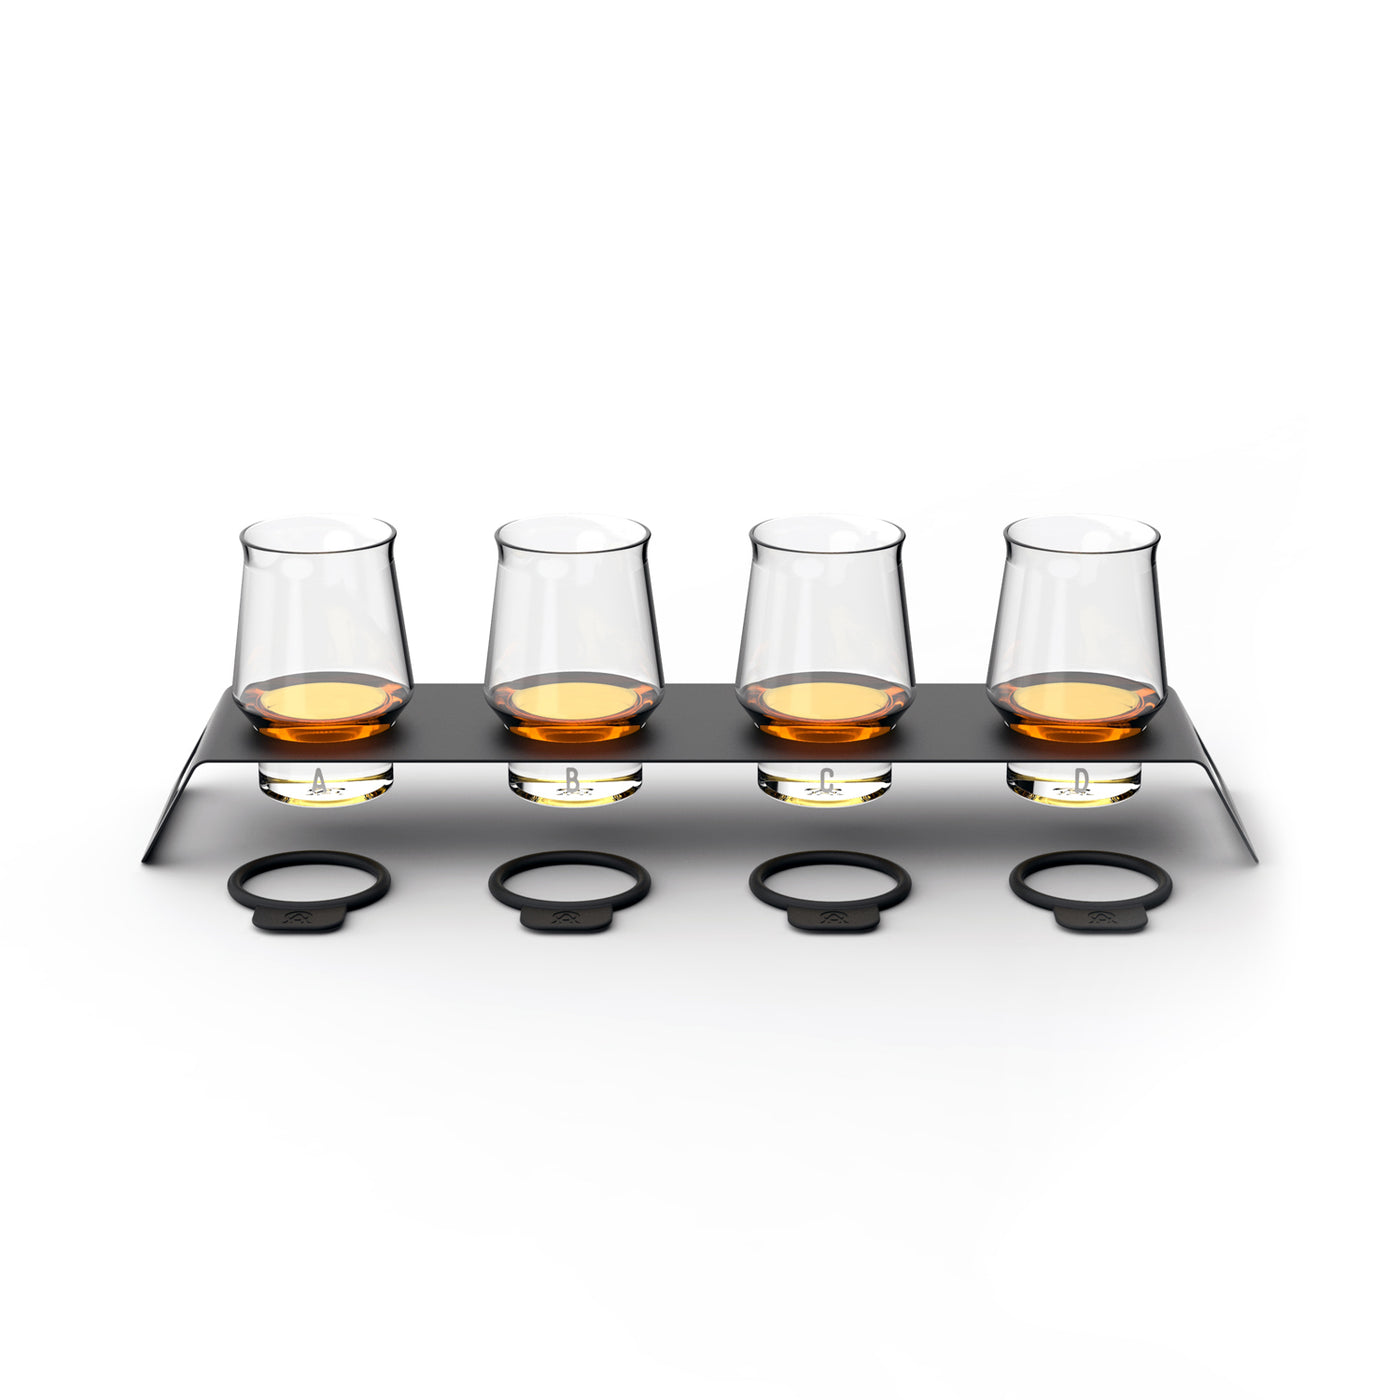 Unbreakable Whiskey Travel Set Brings the Bourbon Tasting Wherever You Go